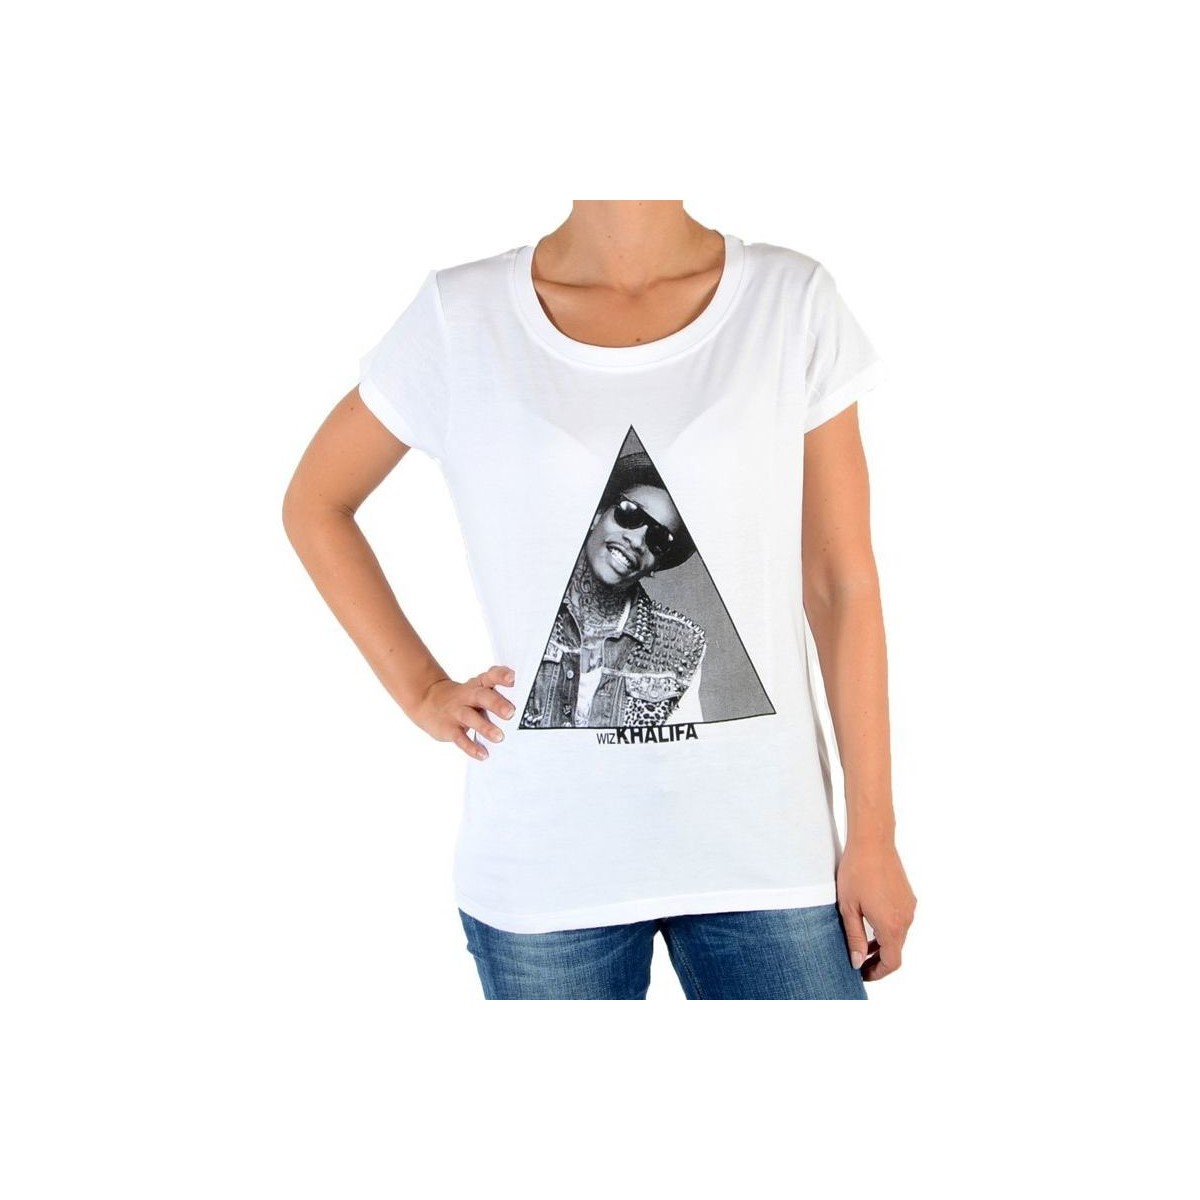 tekstylia Damskie T-shirty i Koszulki polo Eleven Paris 32628 Biały